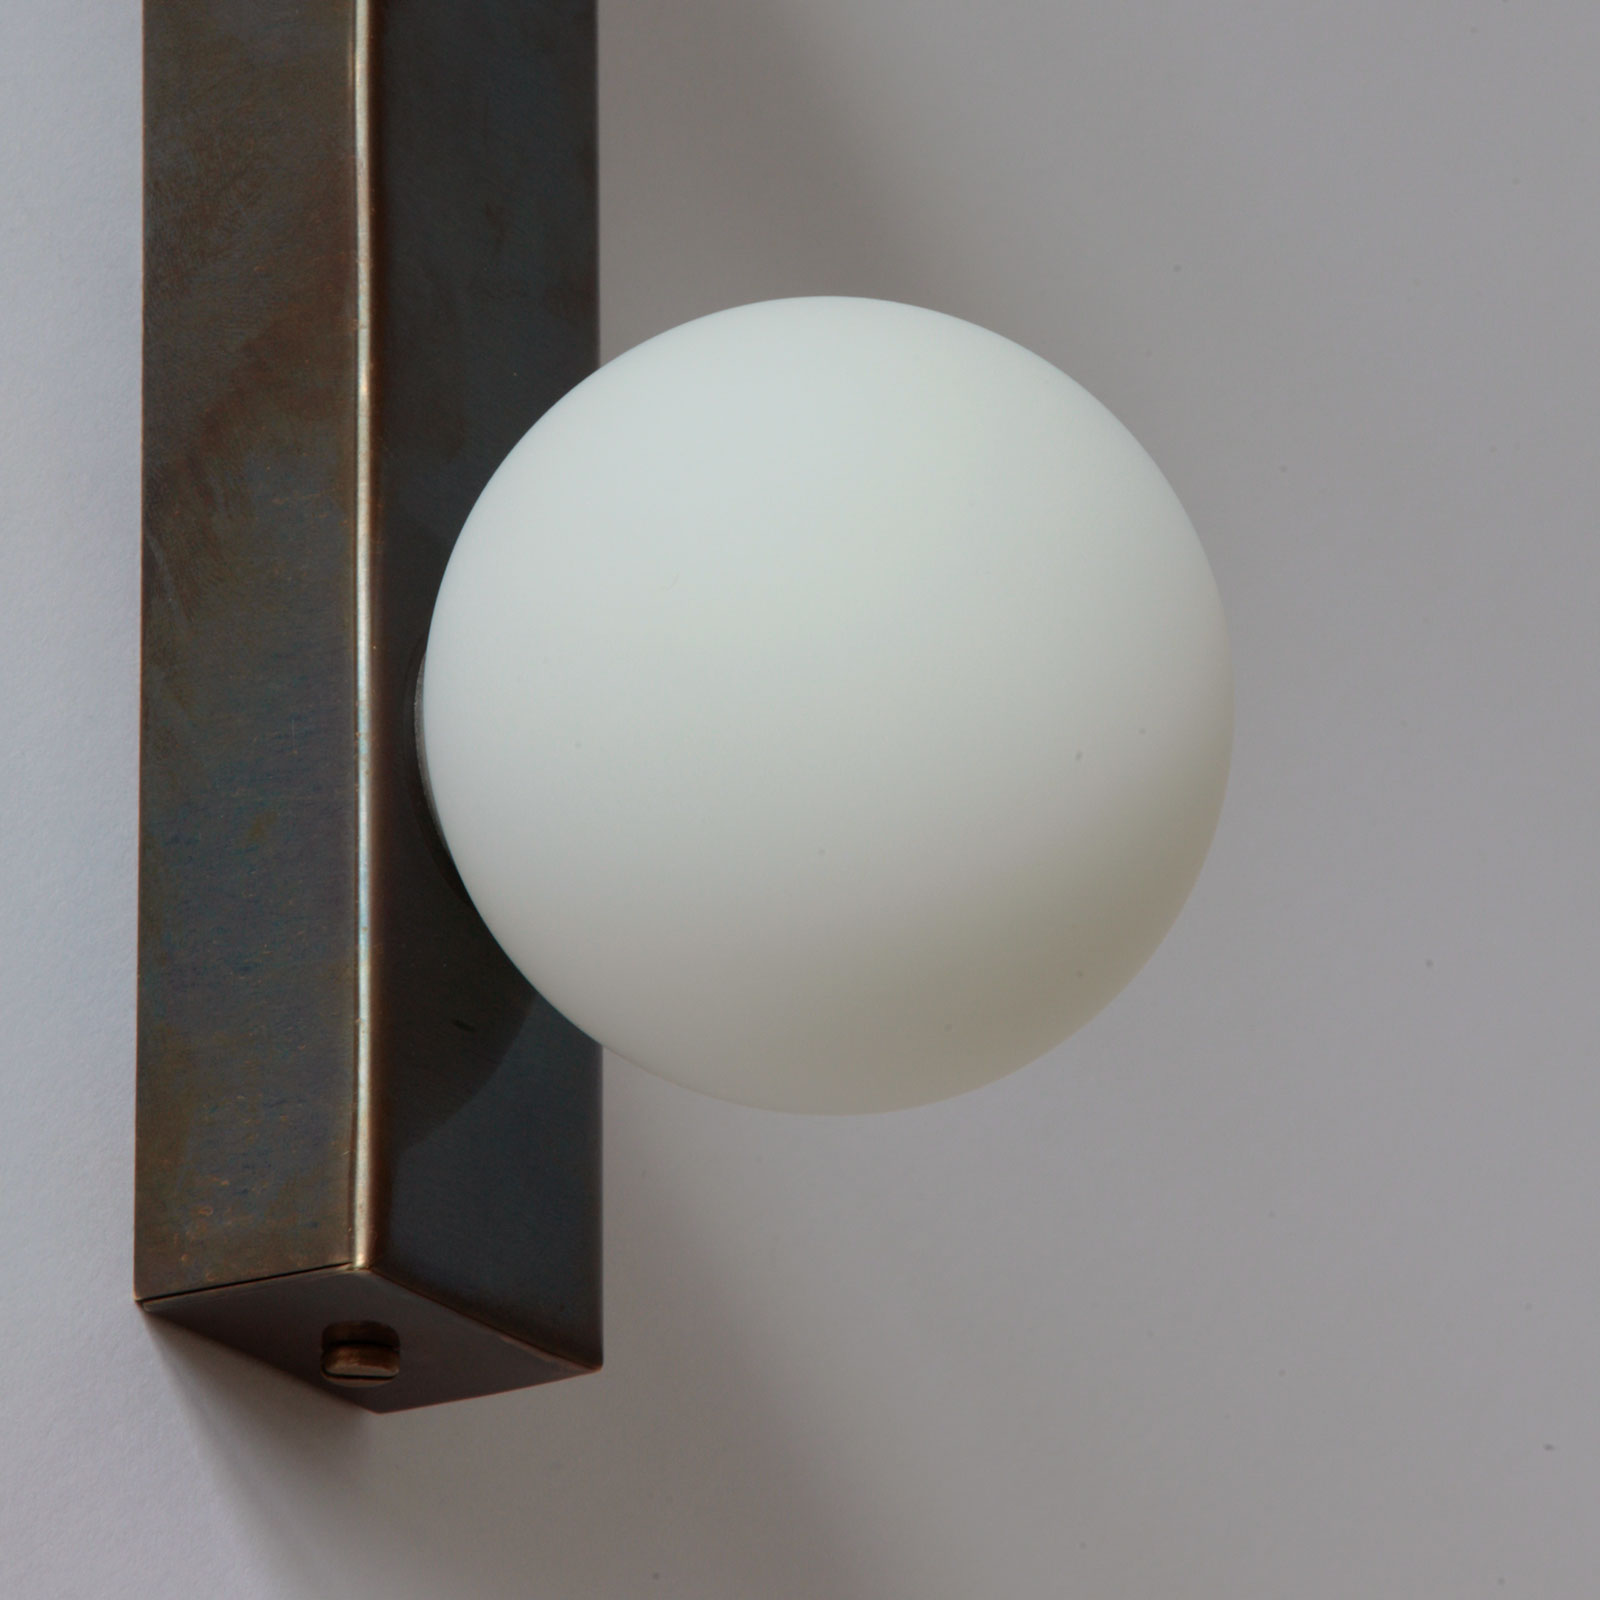 Wandleuchte mit drei Opalglas-Kugeln, mit IP44 auch für Bad-Spiegel: Die matten, kleinen Glaskugel-Schirme (Ø 8 cm) sorgen für weiches, blendarrmes Licht – ideal am Badspiegel